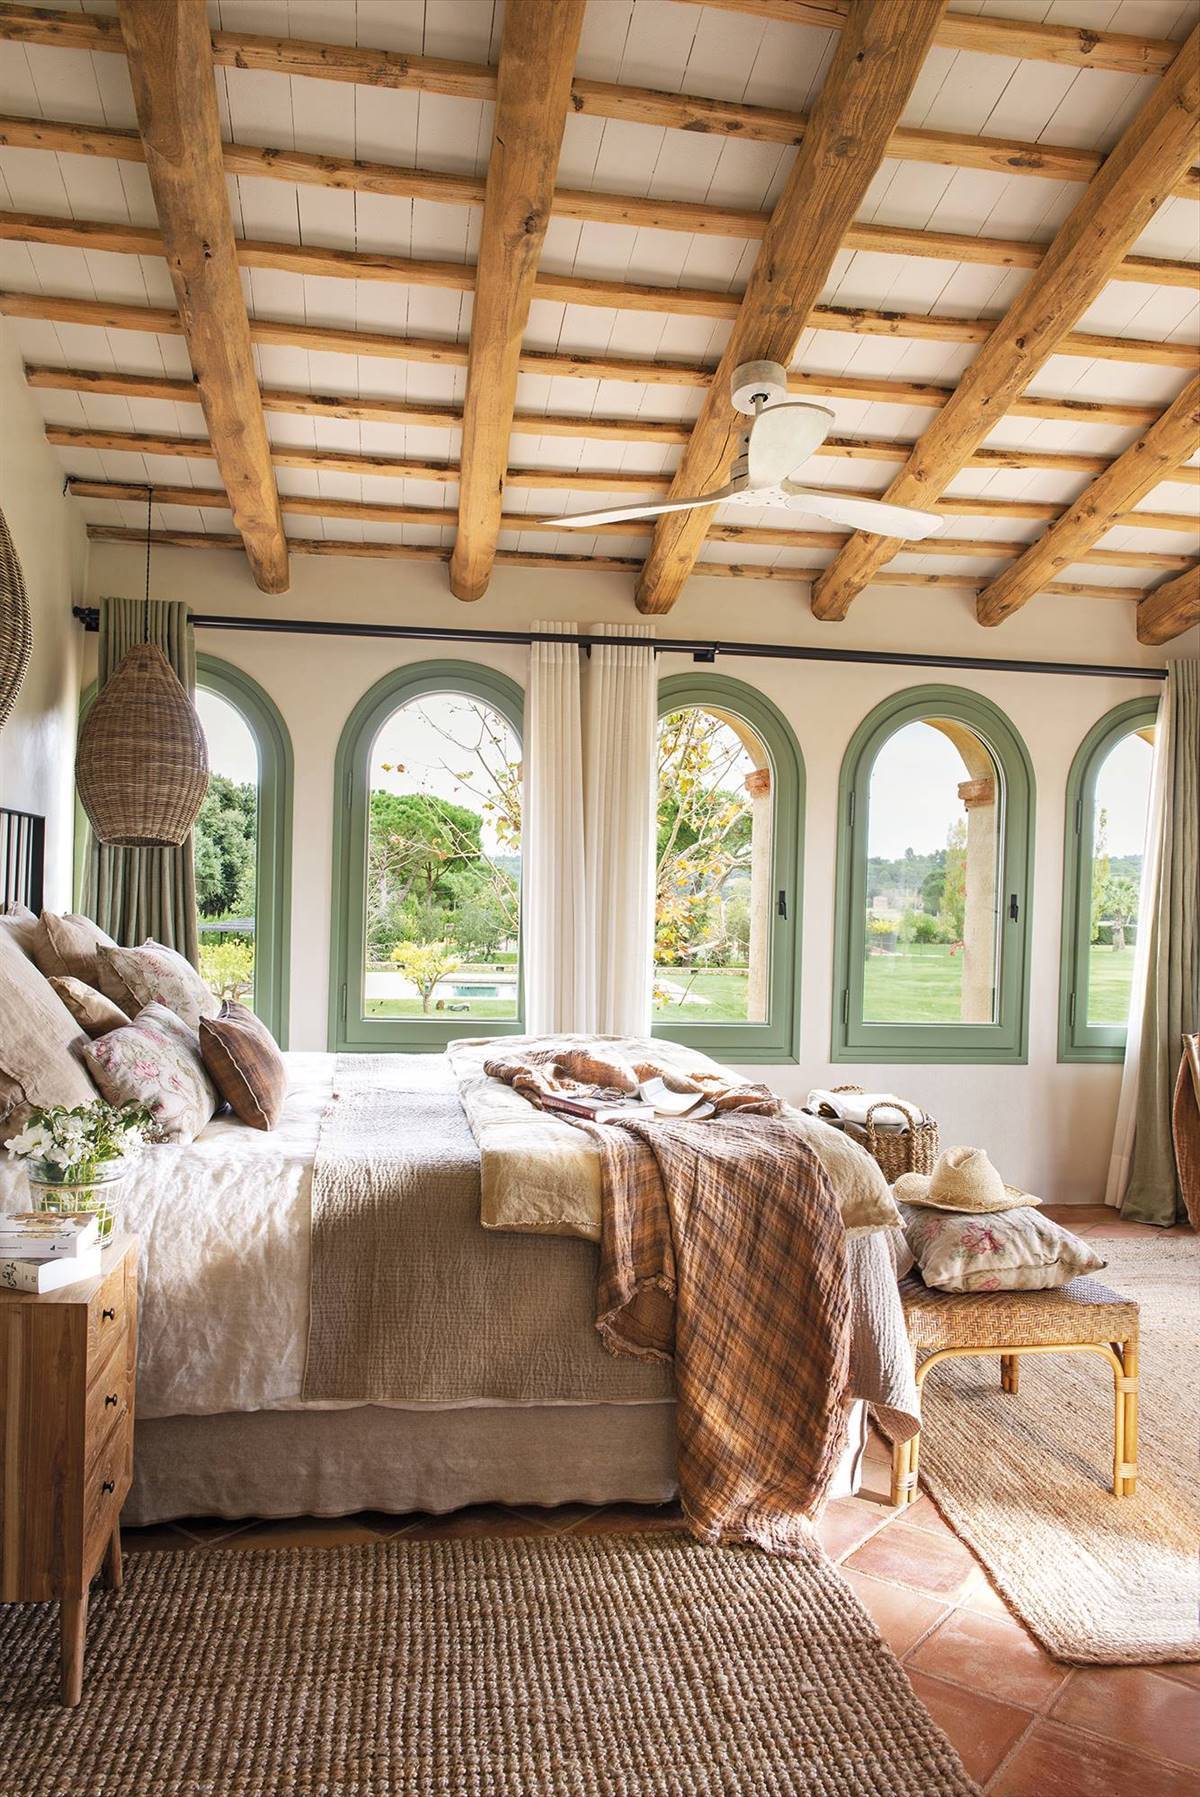 Dormitorio de masía con vigas y ventanales con vistas al jardín